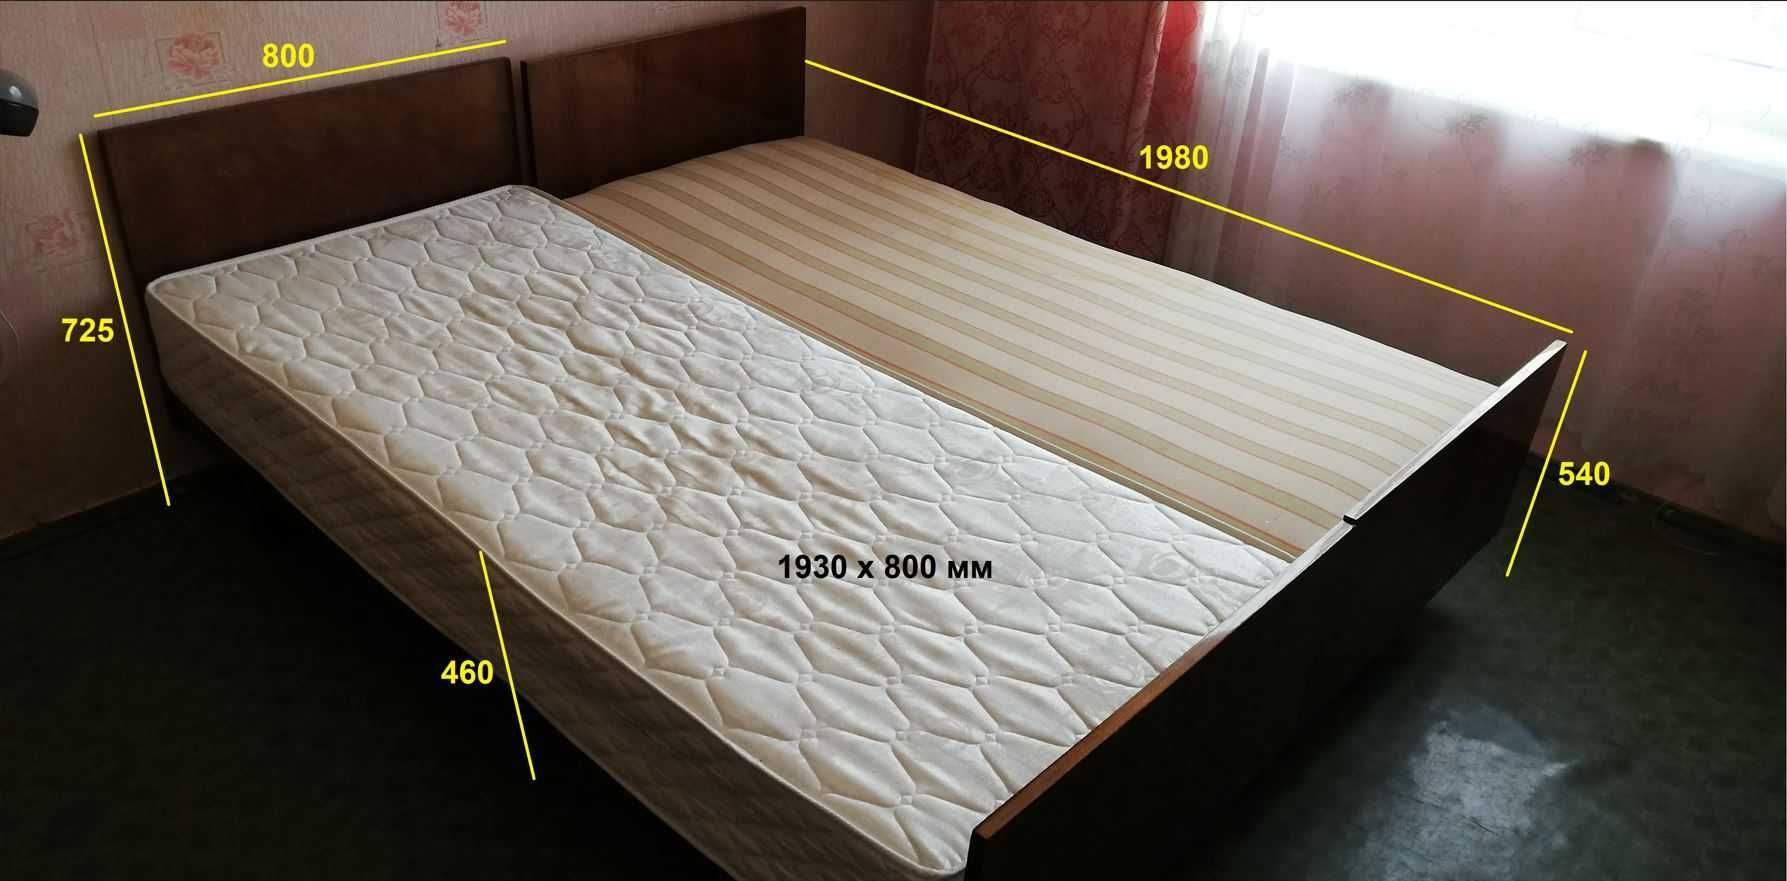 Кровать с матрацем спальное место 1930х800 мм 70-х годов СССР